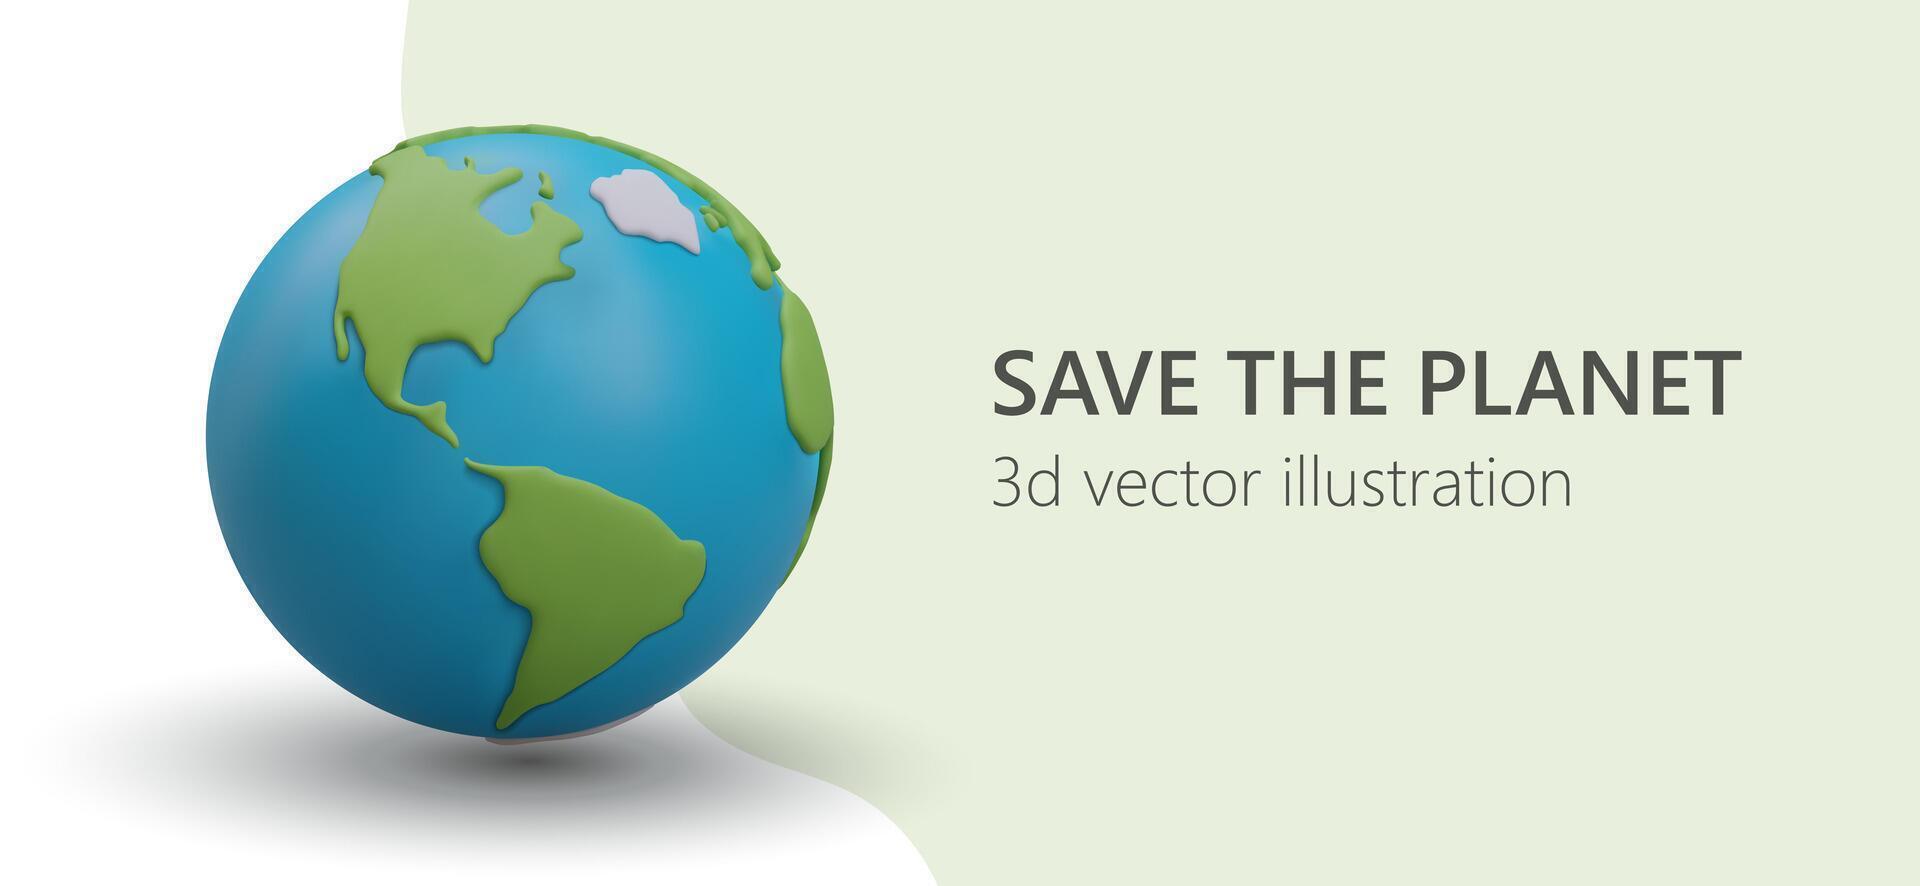 Netz Poster mit 3d realistisch Erde Planet. Poster mit Slogan speichern Planet vektor